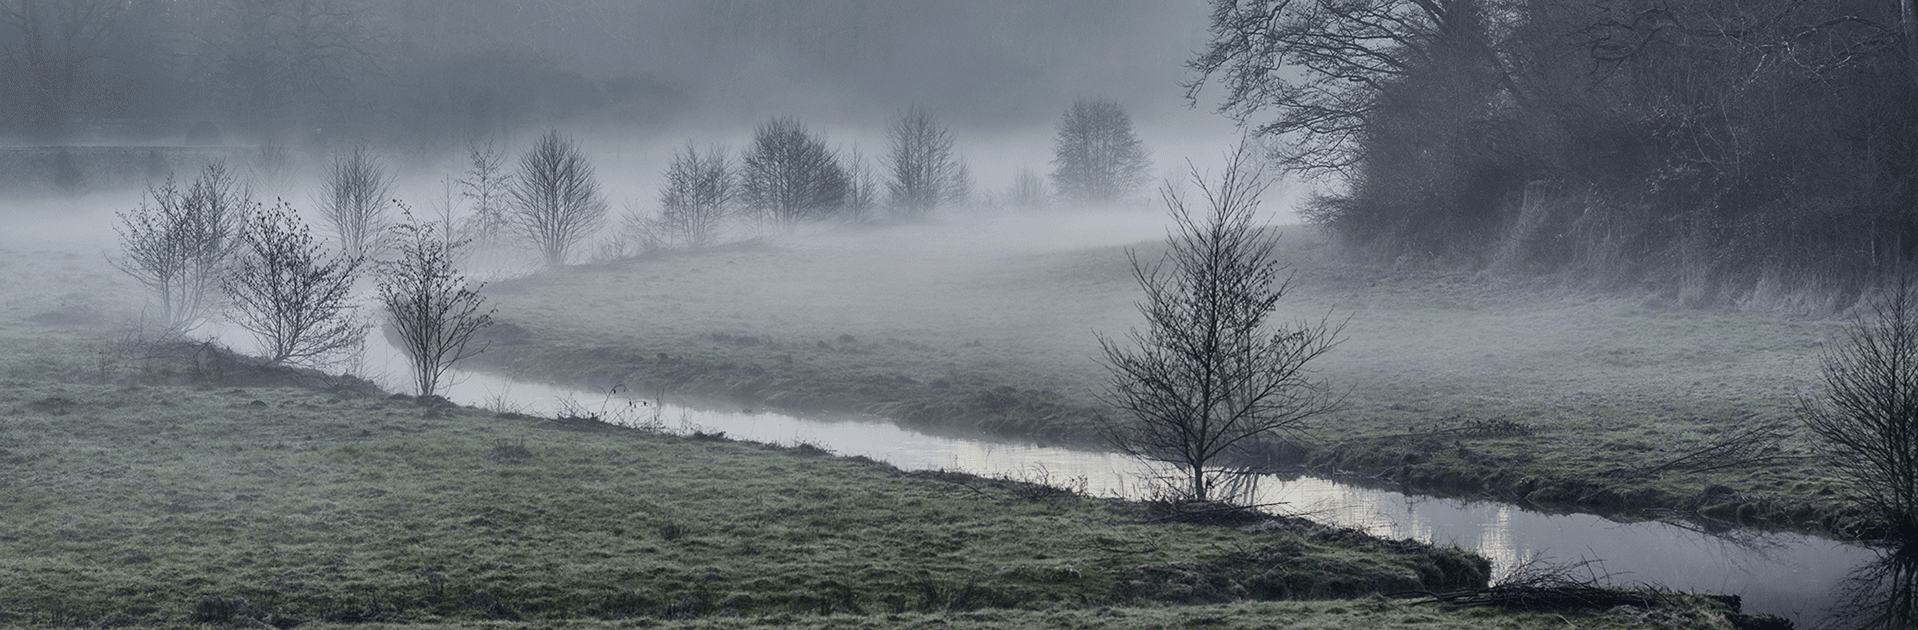 Fraze et la brume dans le parc du chateau © Didier Leplat - 2016